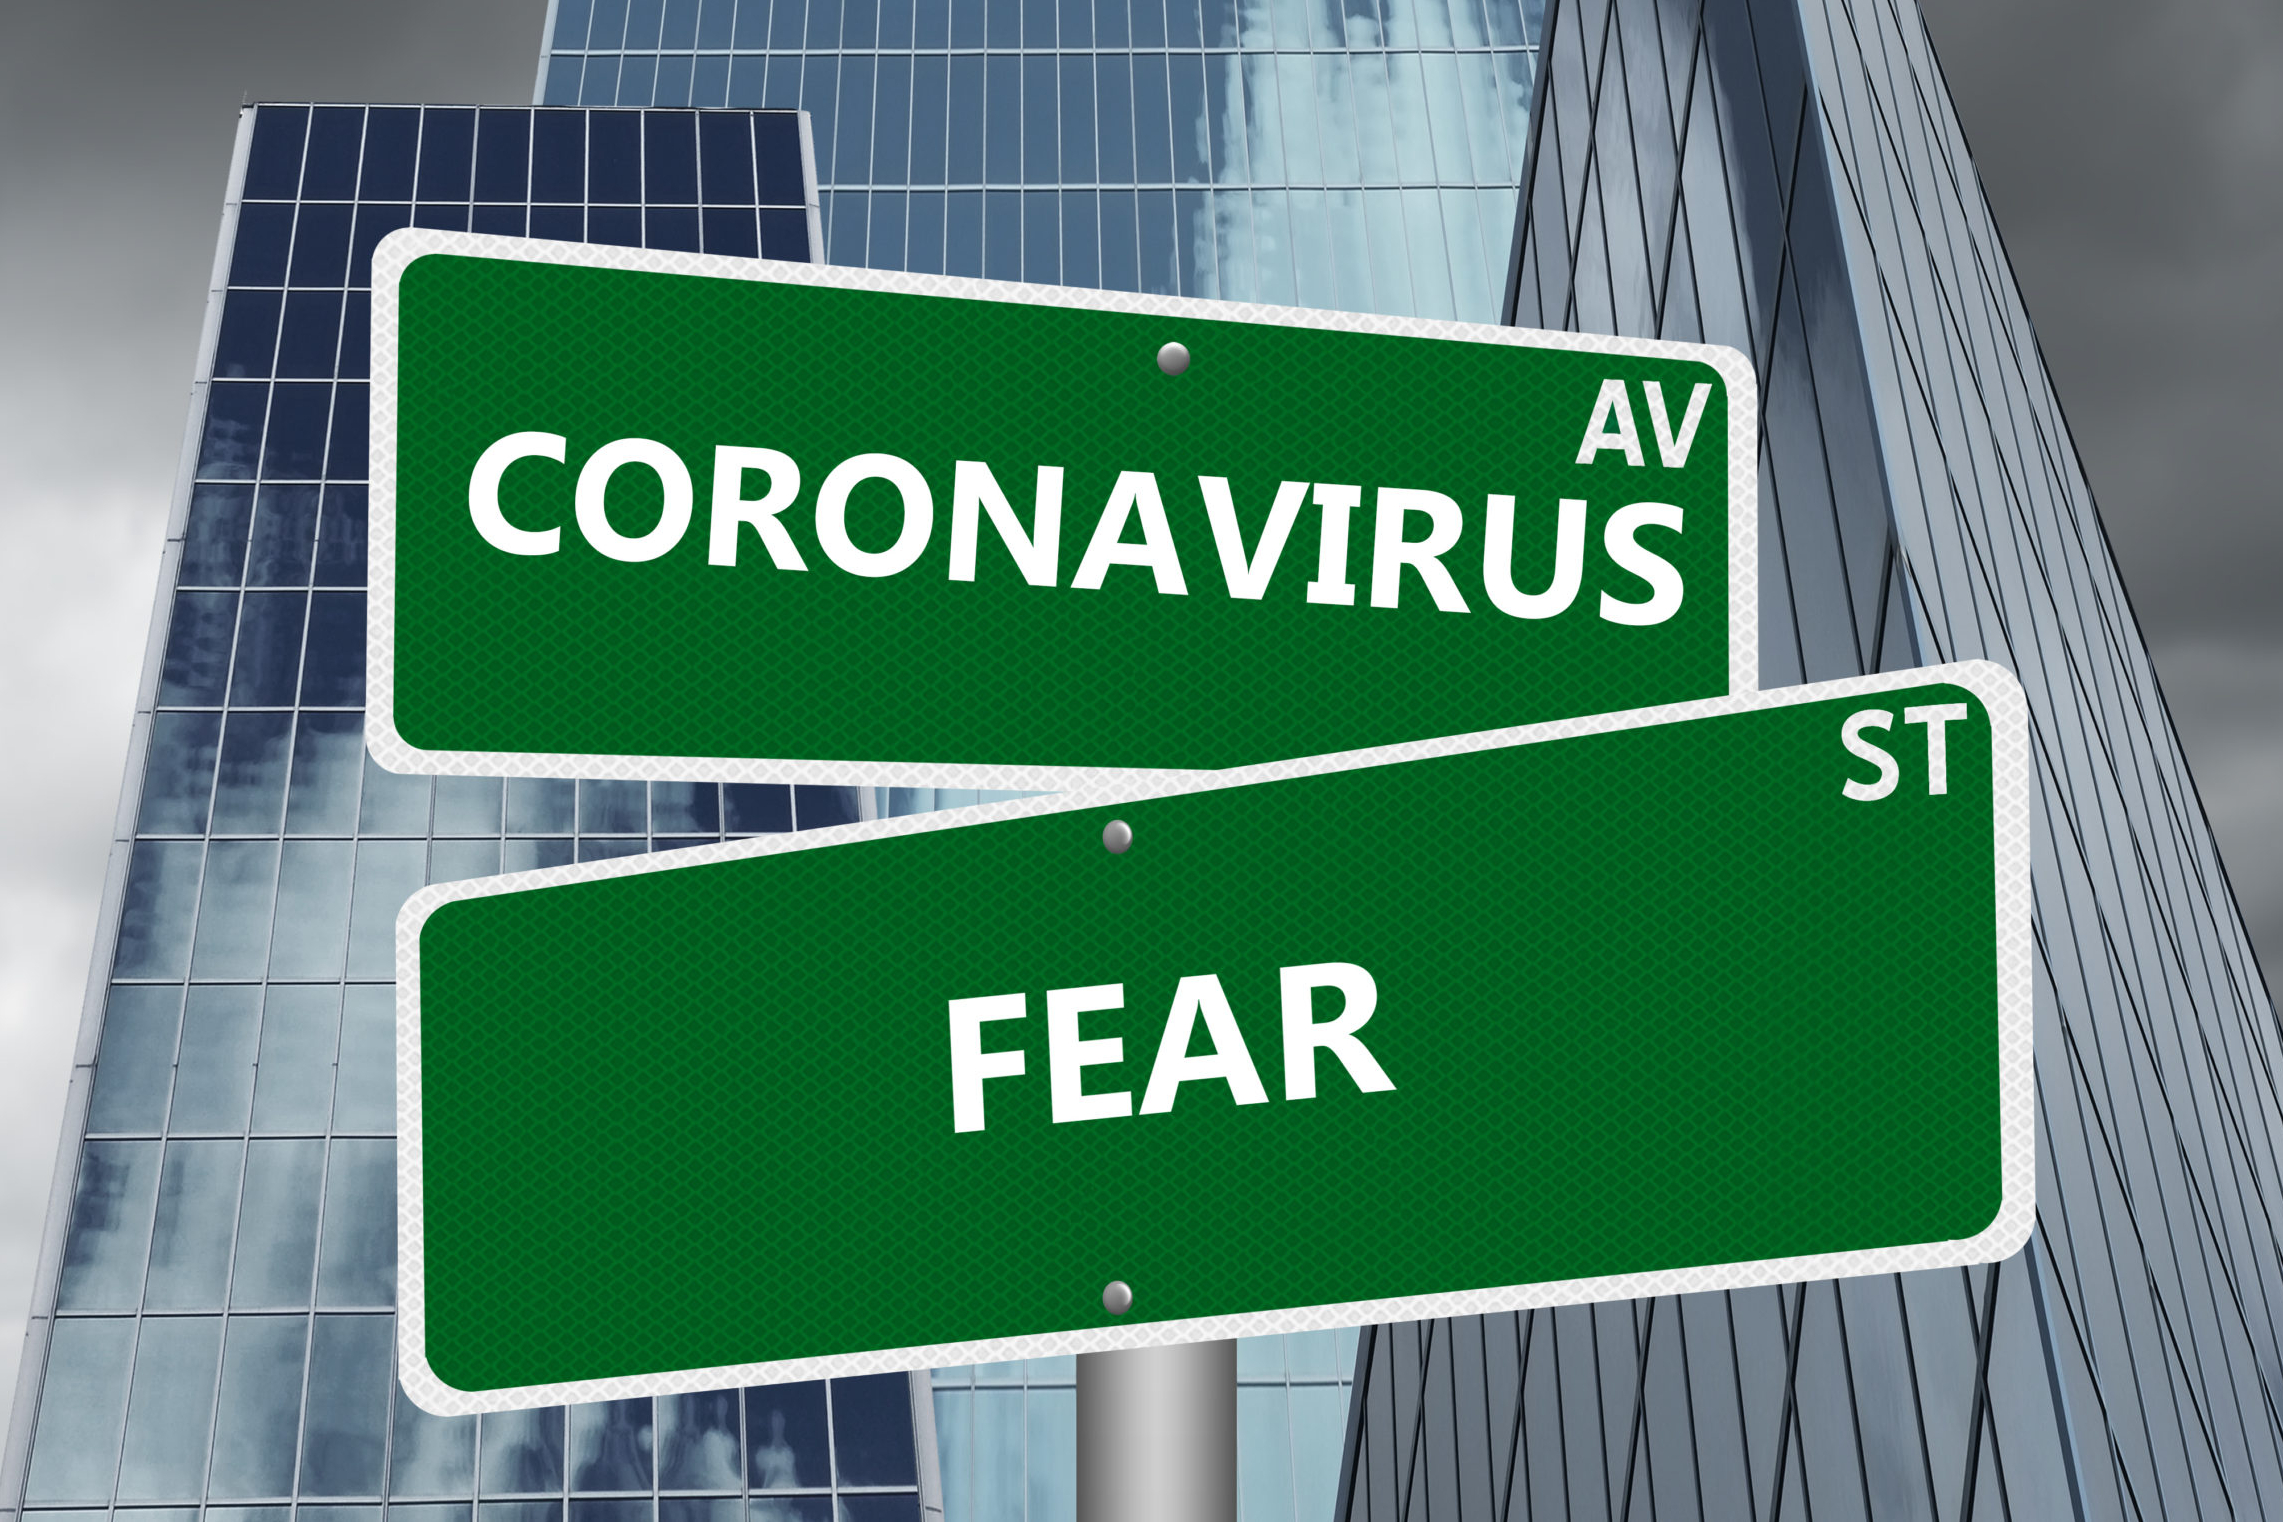 Coronavirus Av & Fear St Signs